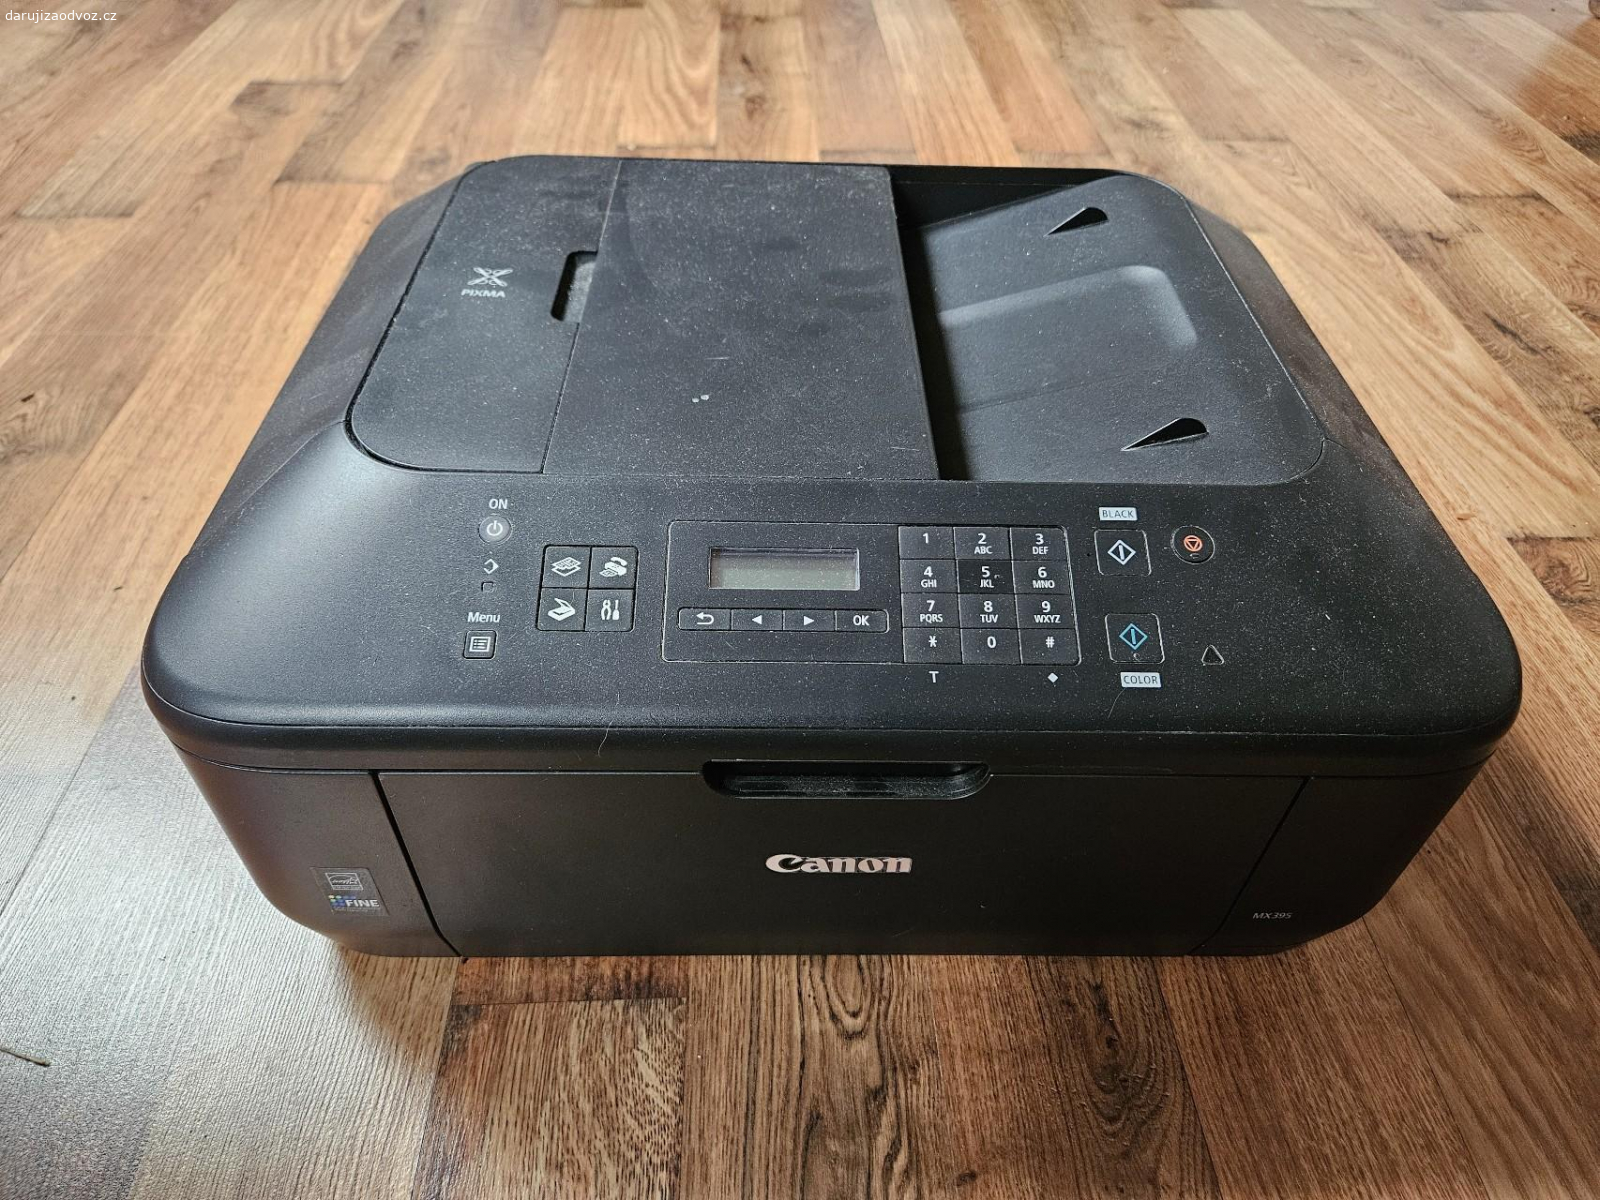 Tiskárna se skenerem. Canon MX395
Bez toneru
Po zapojení naběhne